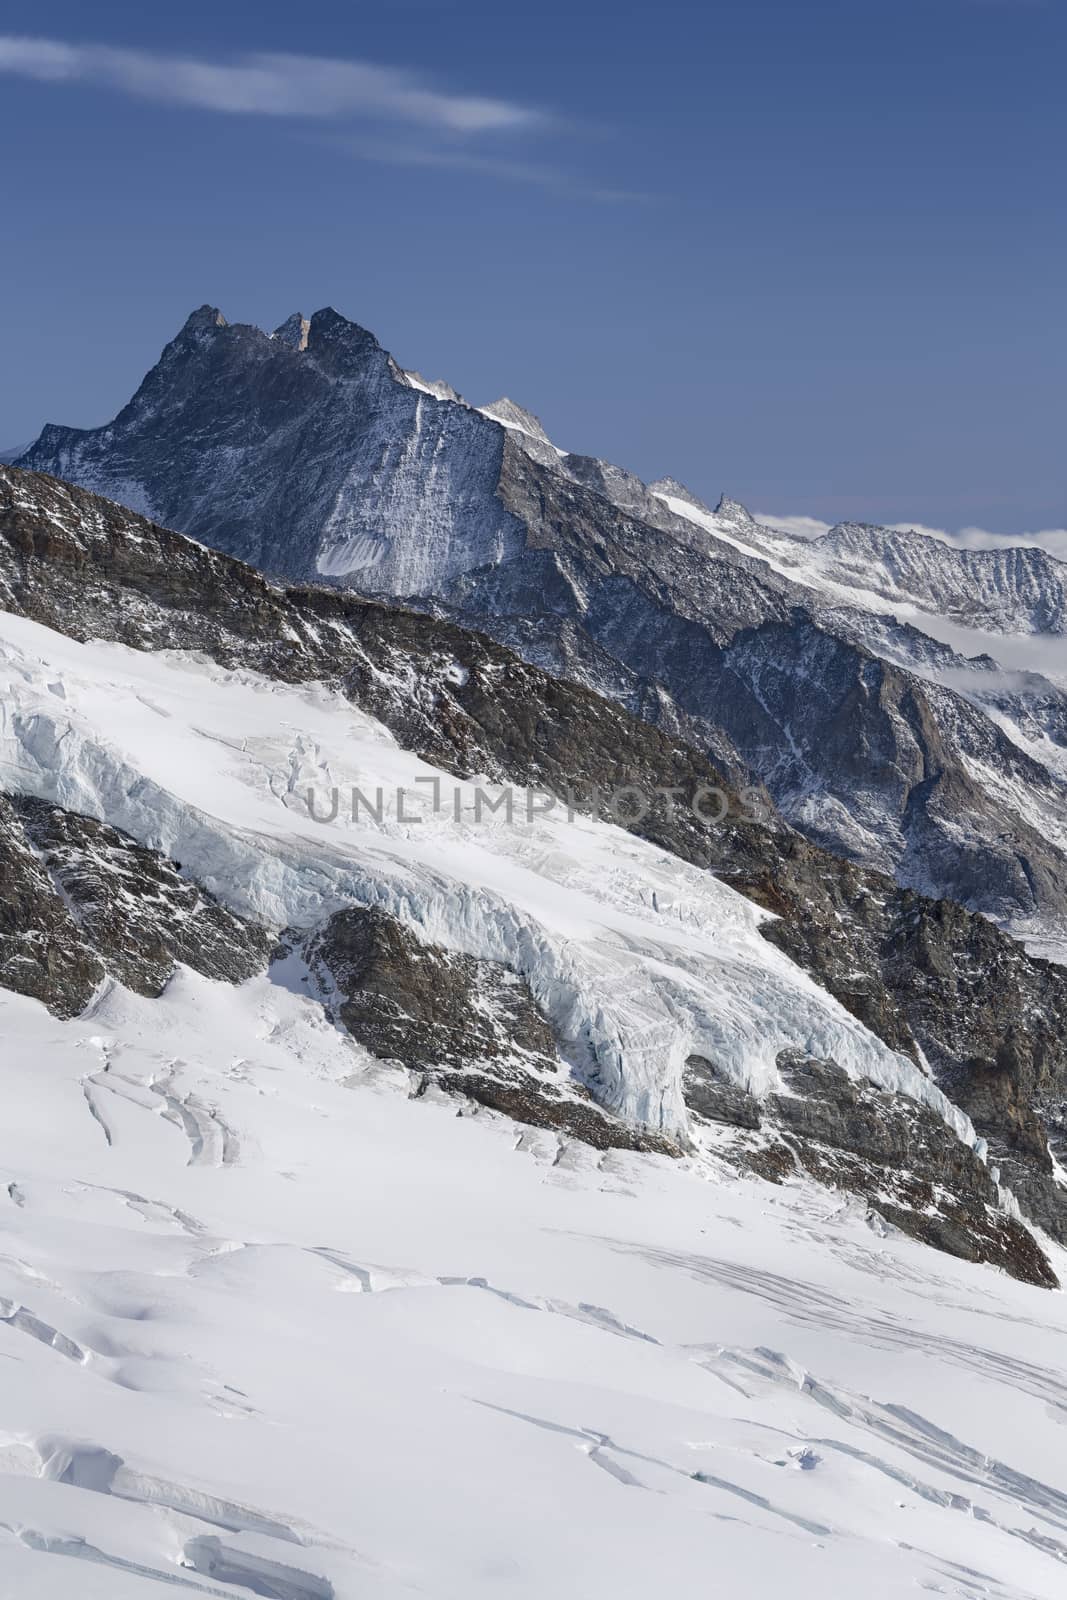 Beautiful mountain view from Jungfraujoch, Switzerland, Bernese Alps, Switzerland